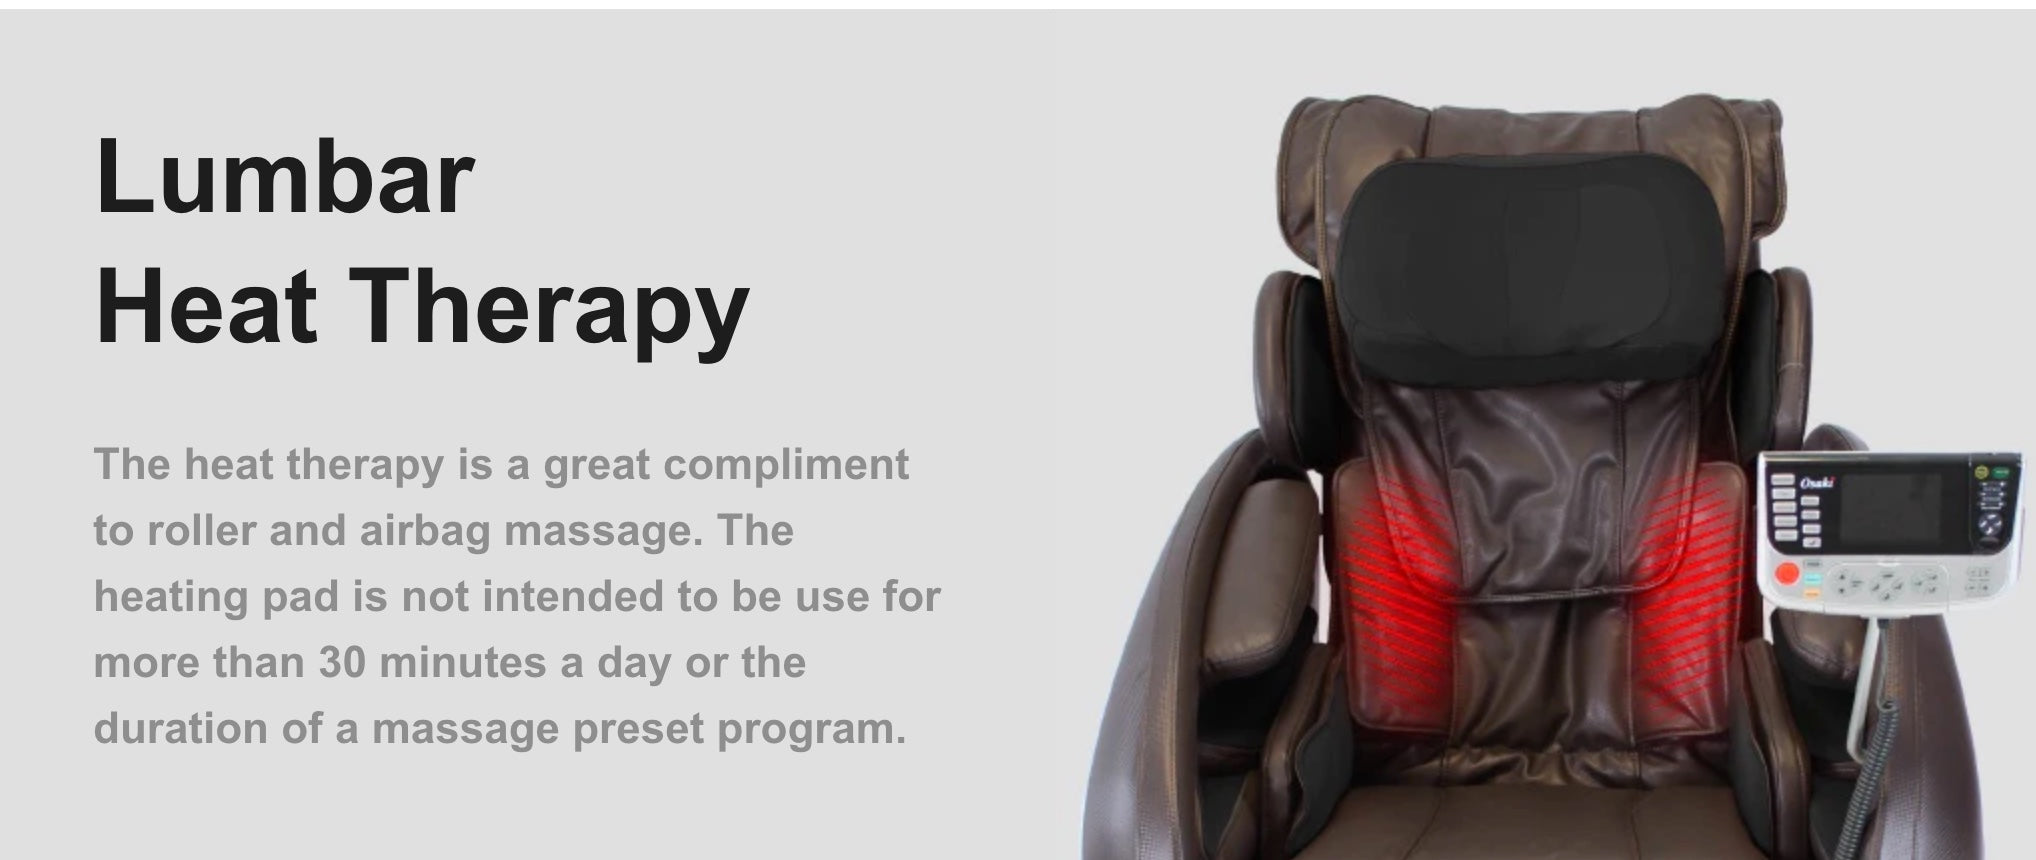 Lumbar Heat therapy